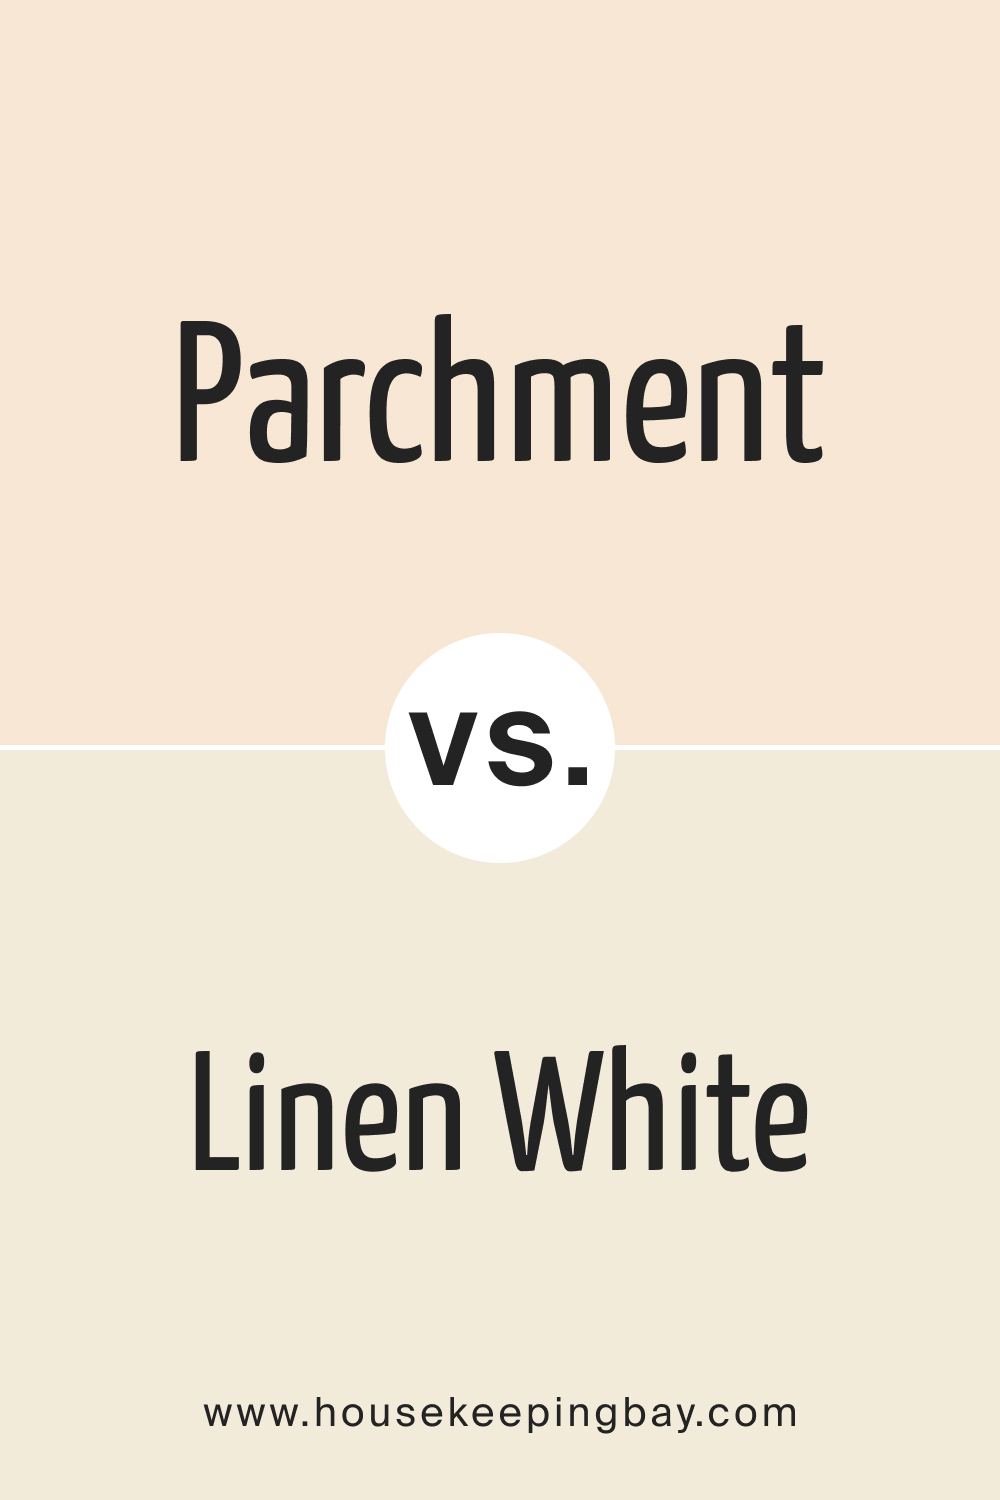 Parchment OC 78 vs. BM 912 Linen White